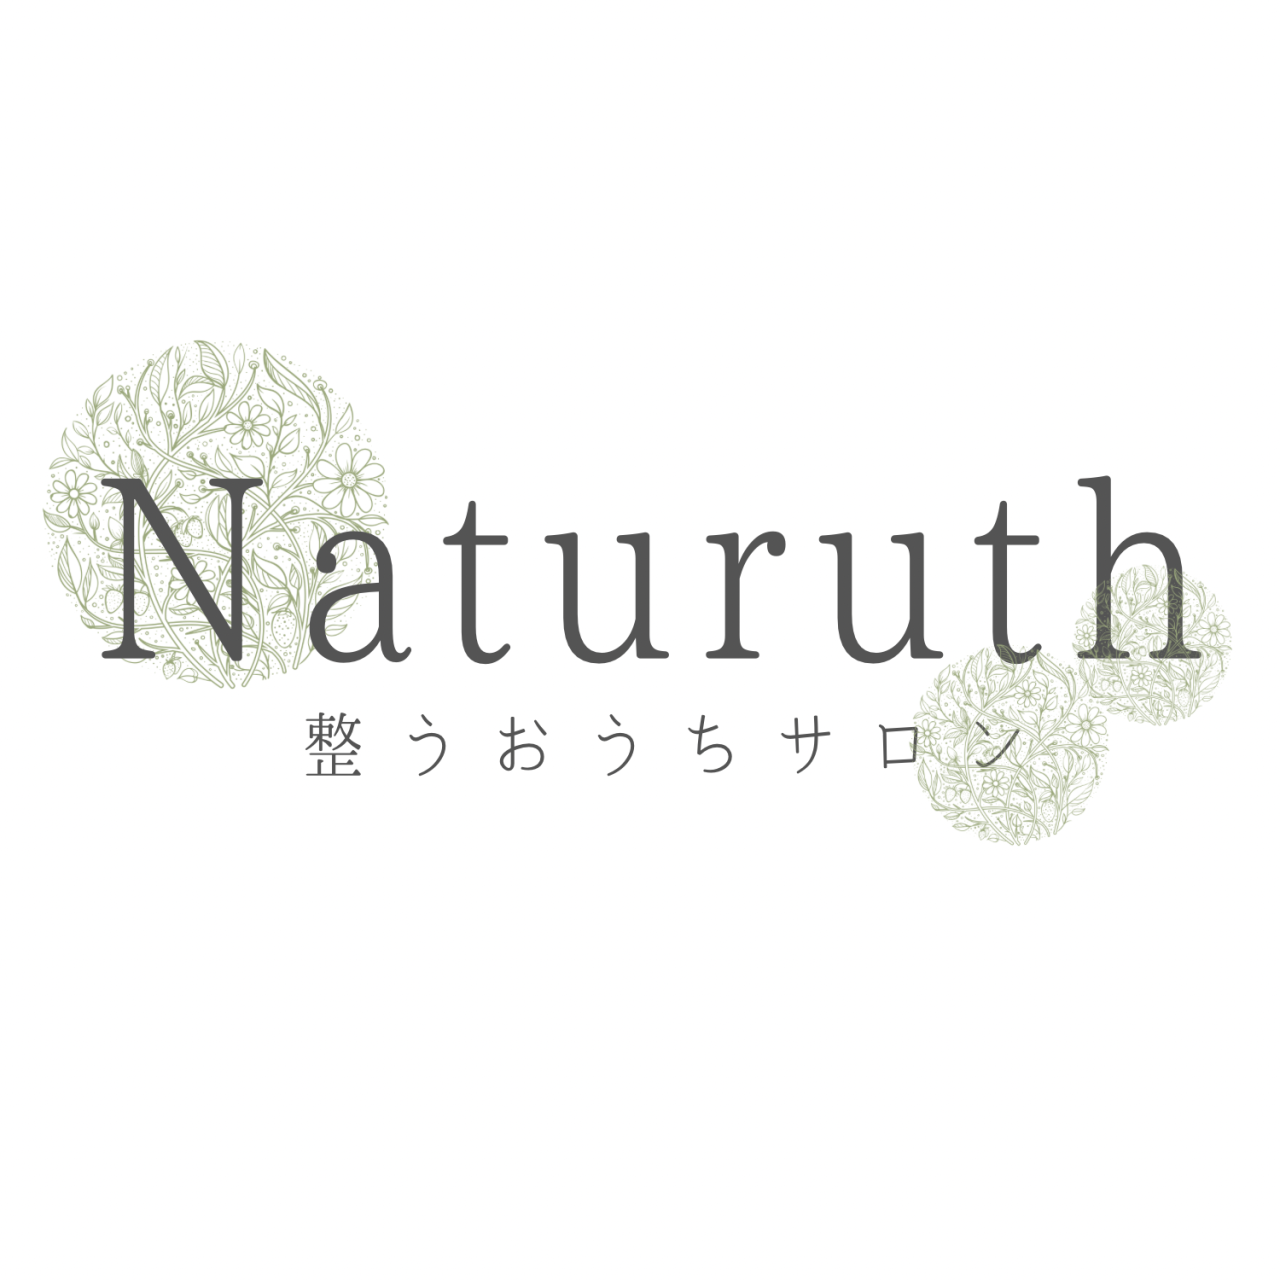 Naturuth